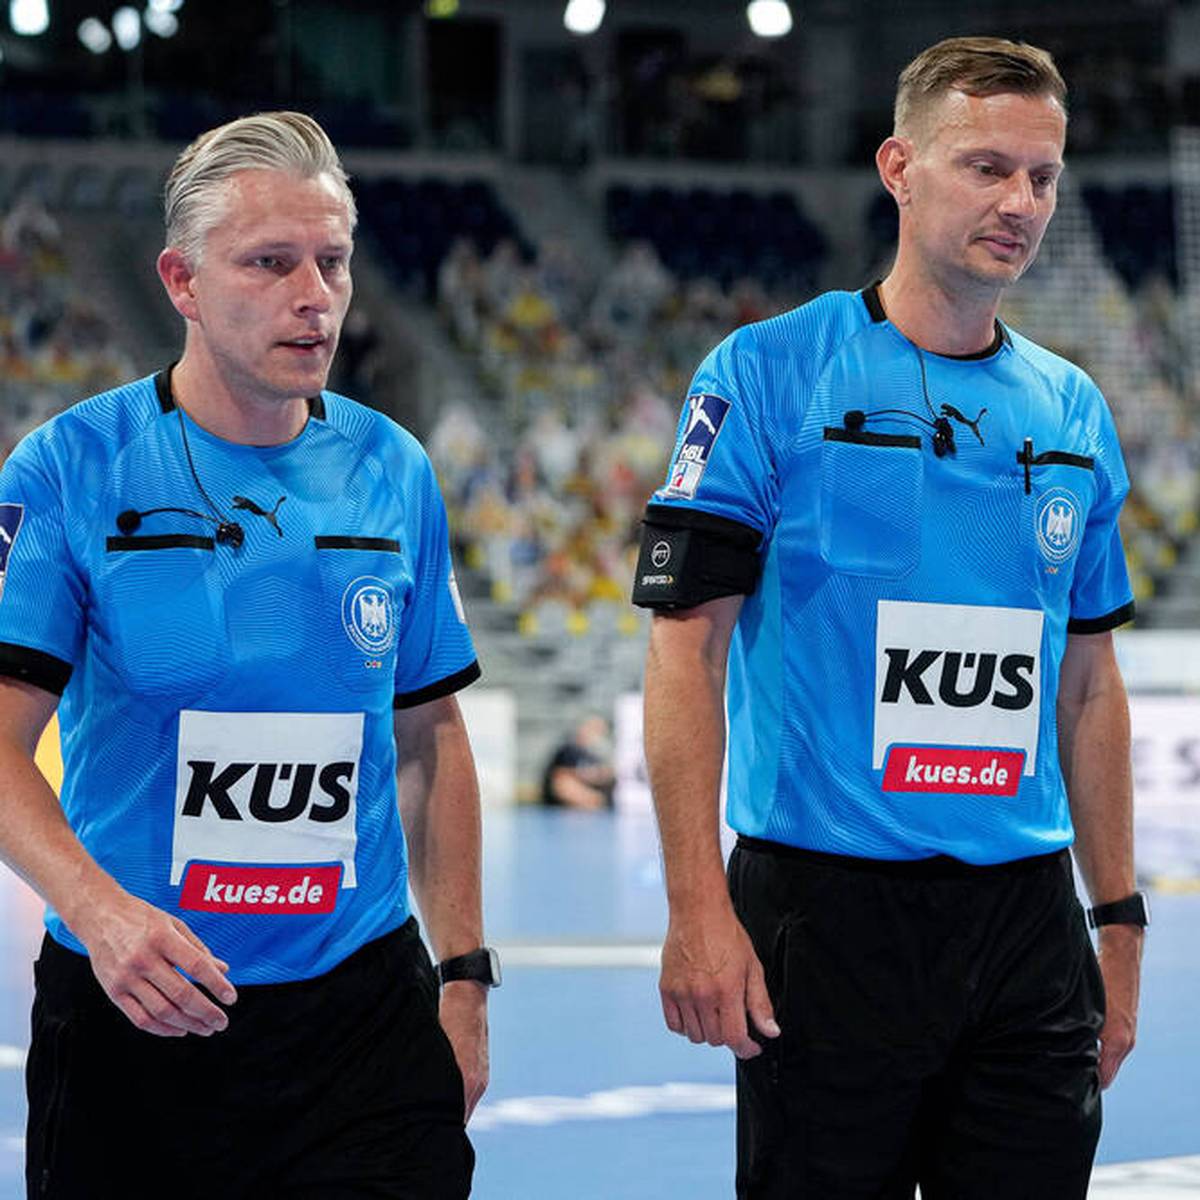 Das Finale der Handball-EM wird mit deutscher Beteiligung stattfinden. Die Schiedsrichter Robert Schulze und Tobias Tönnies leiten das Endspiel.